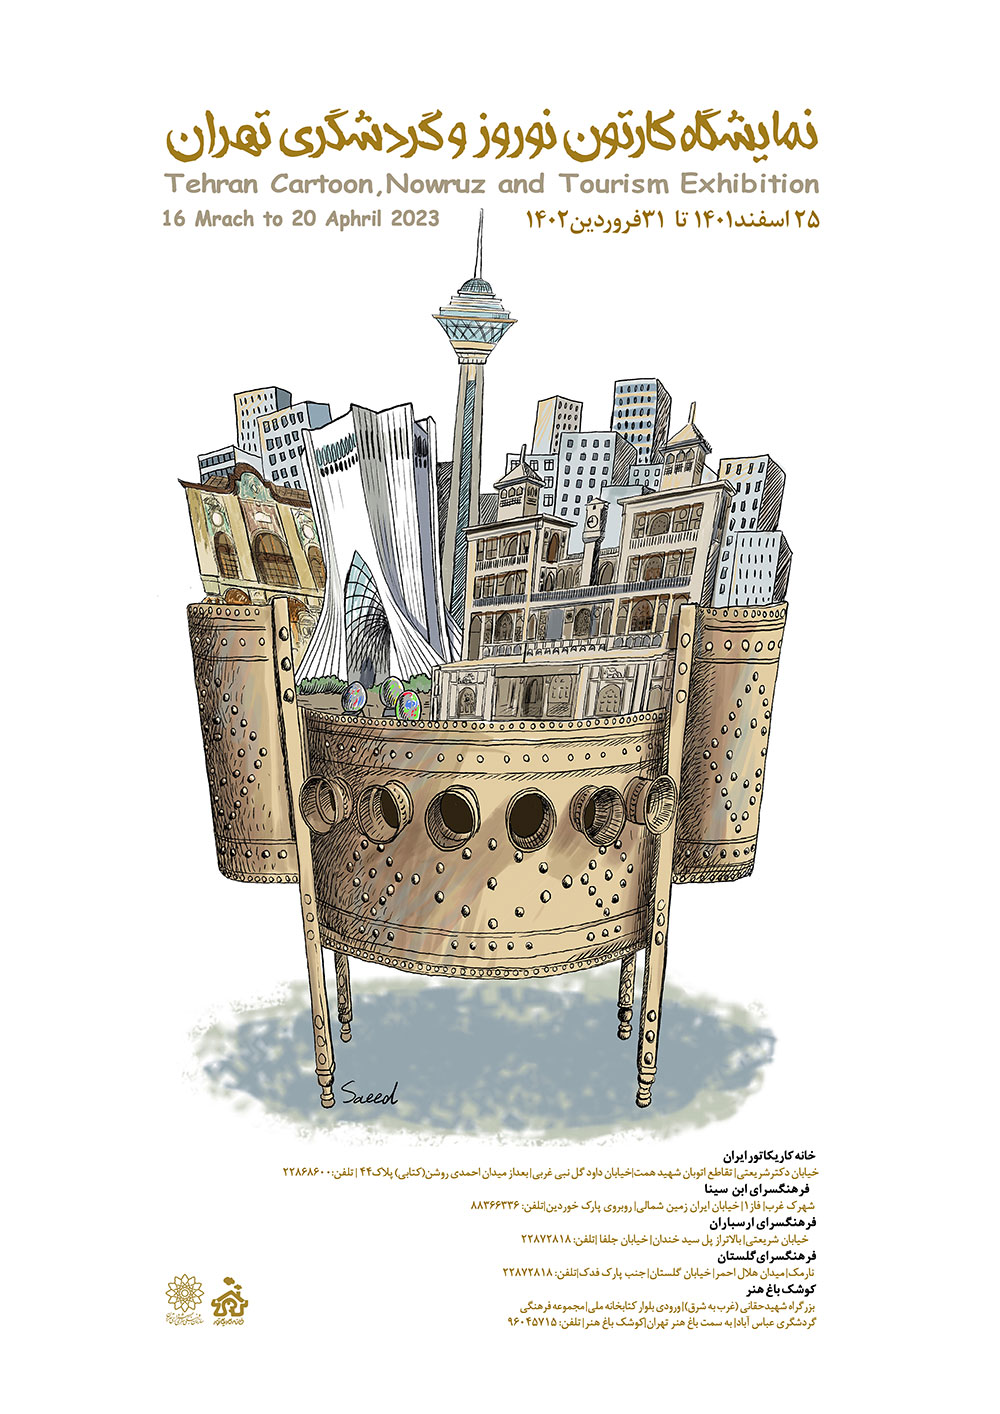 برگزاری نمایشگاه "کارتون نوروز و گردشگری تهران" همزمان در 5 مرکز فرهنگی هنری